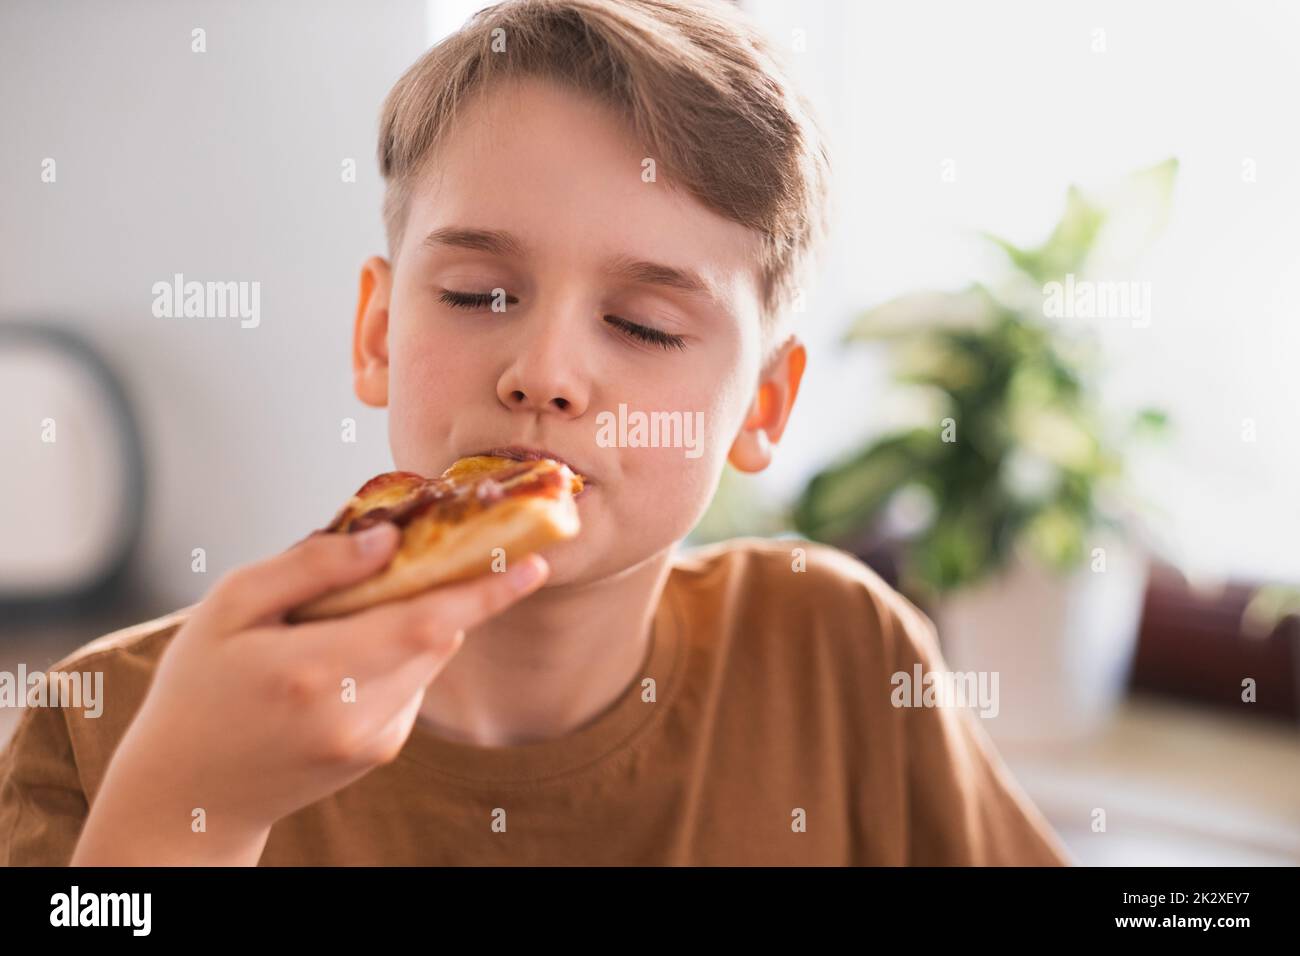 Le gars avec plaisir mange une délicieuse pizza dans la cuisine à la maison. Banque D'Images